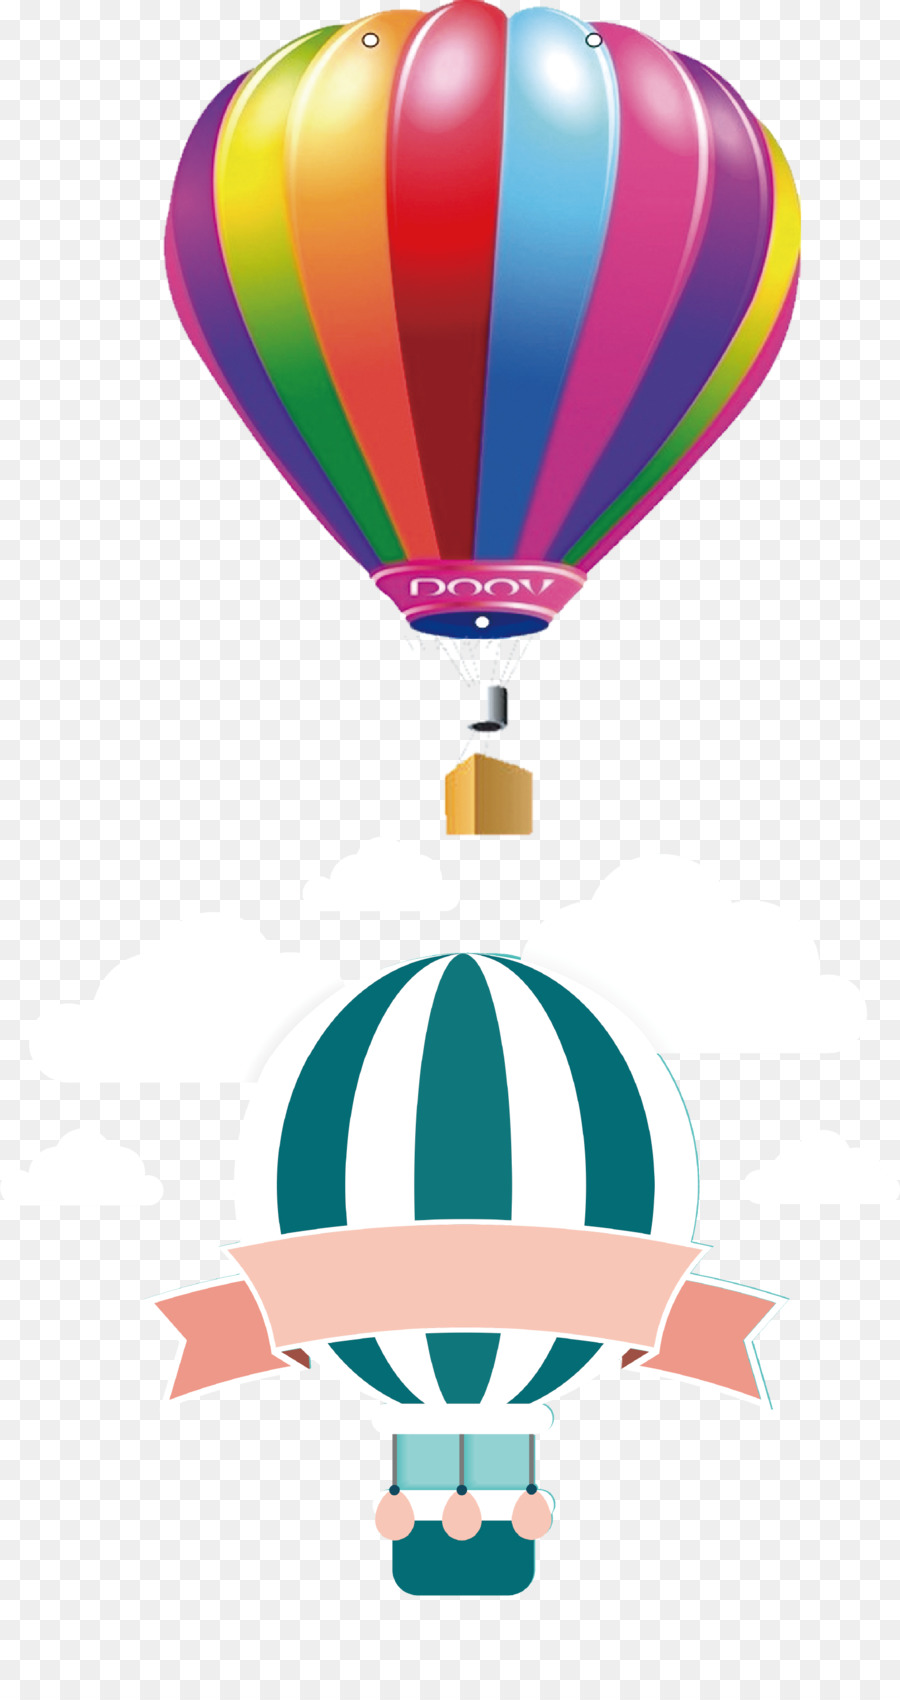 Cesto Della Mongolfiera Illustrazione - Il paracadute è splendidamente decorate e ben modellato